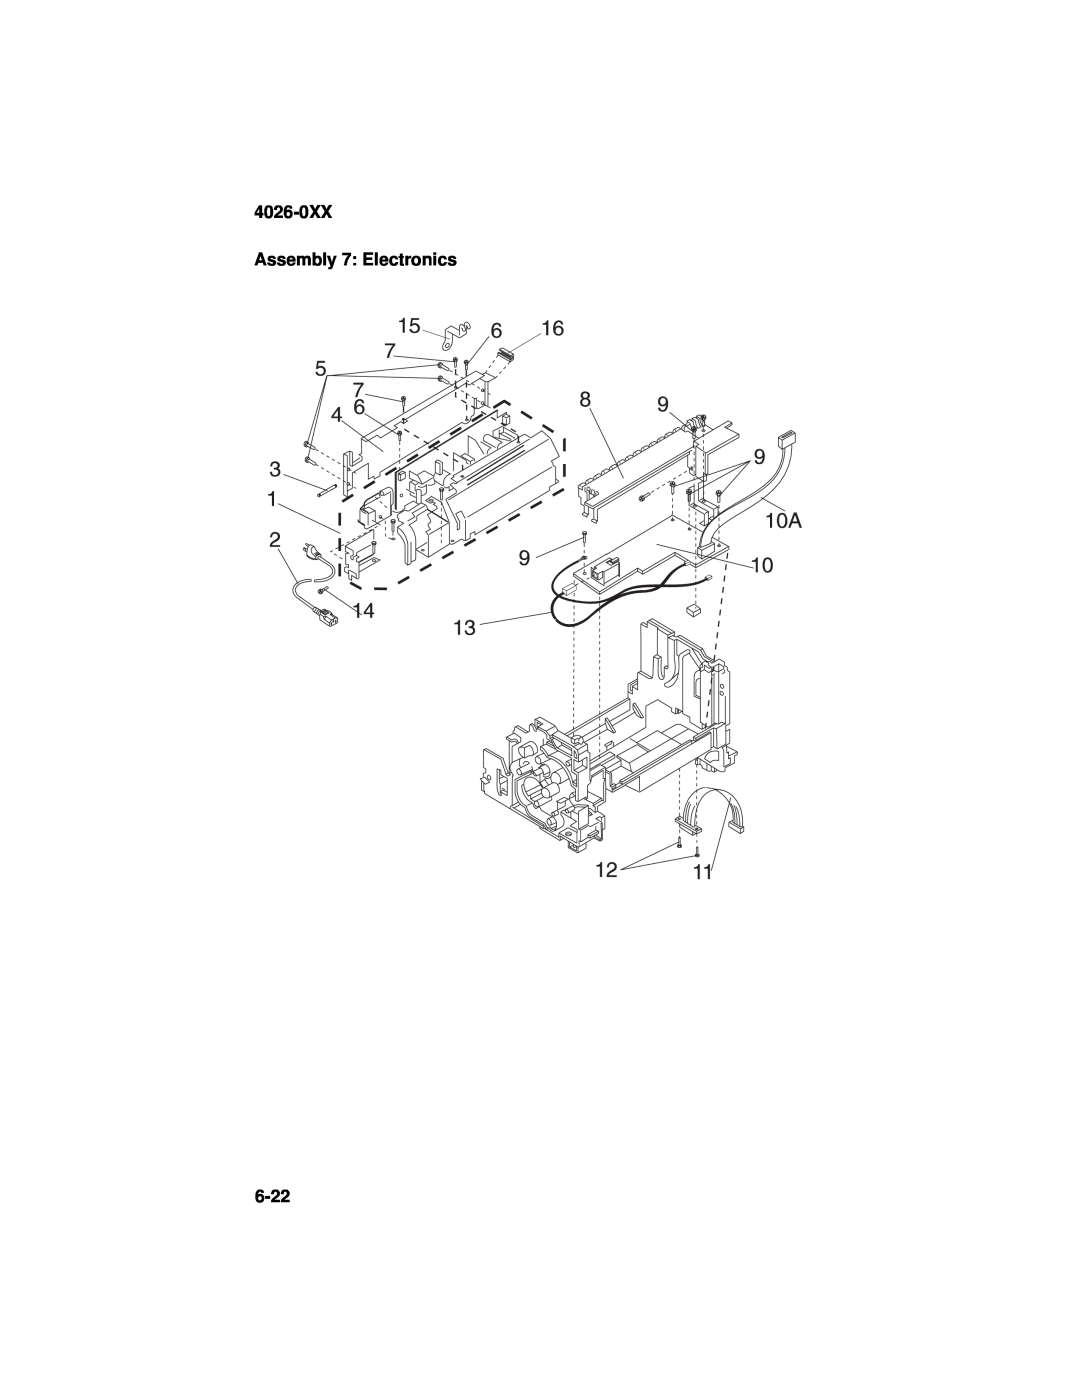 Lexmark OptraTM manual 4026-0XX Assembly 7: Electronics, 6-22 